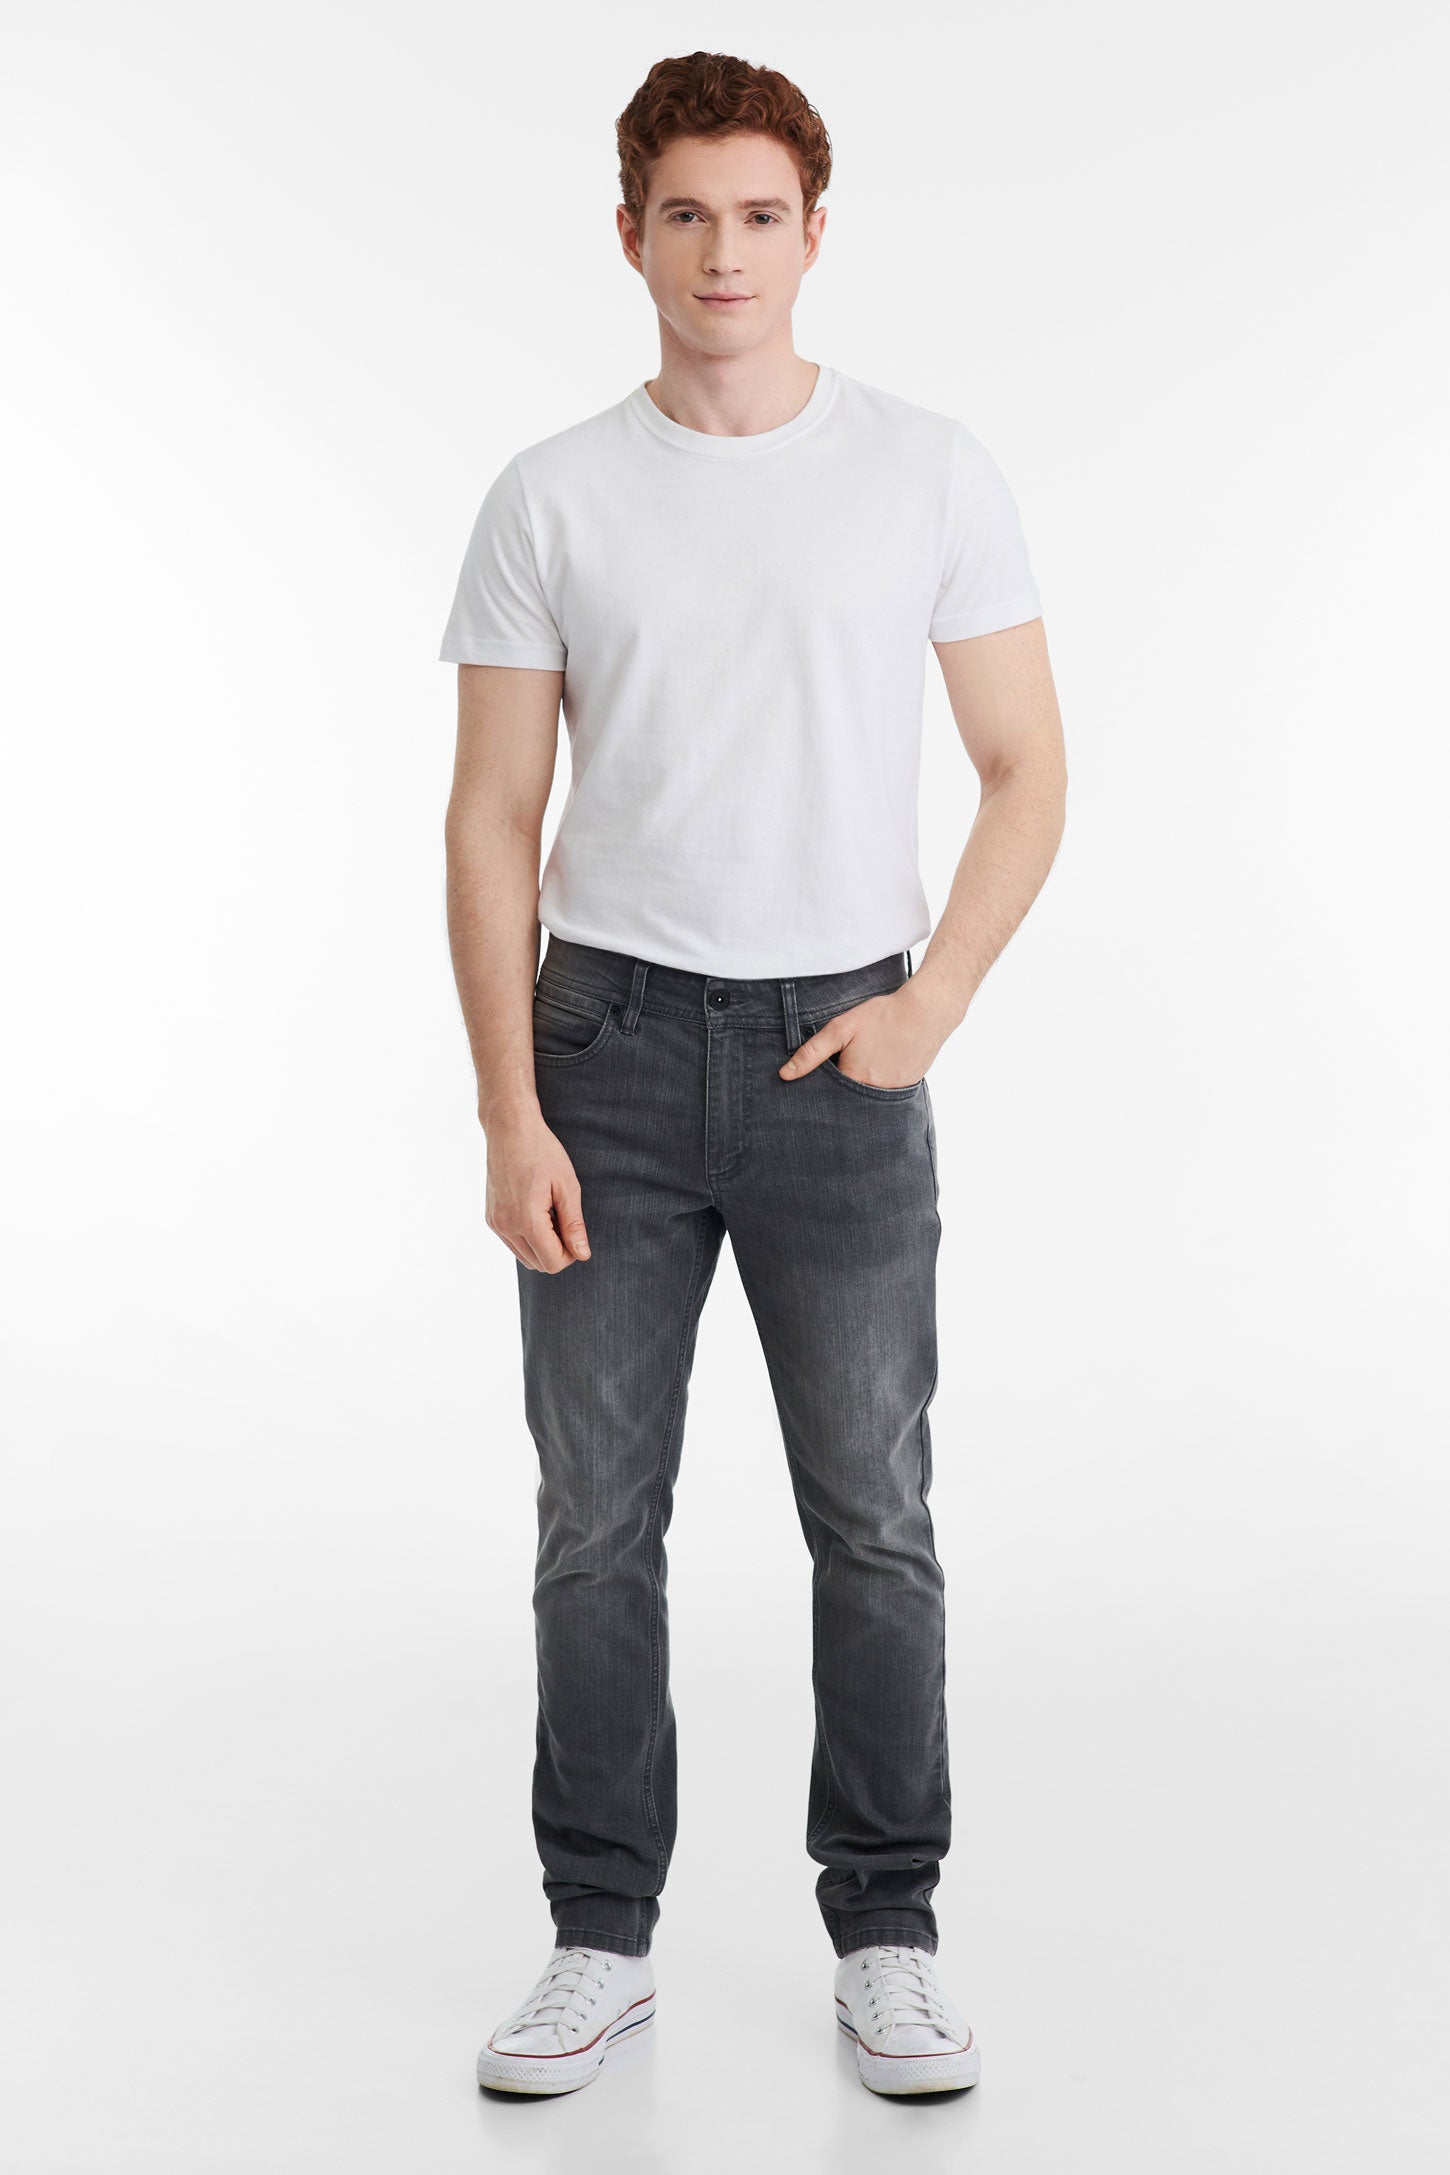 Jeans 5 poches coupe ajustée 30'' - Homme && GRIS FONCE